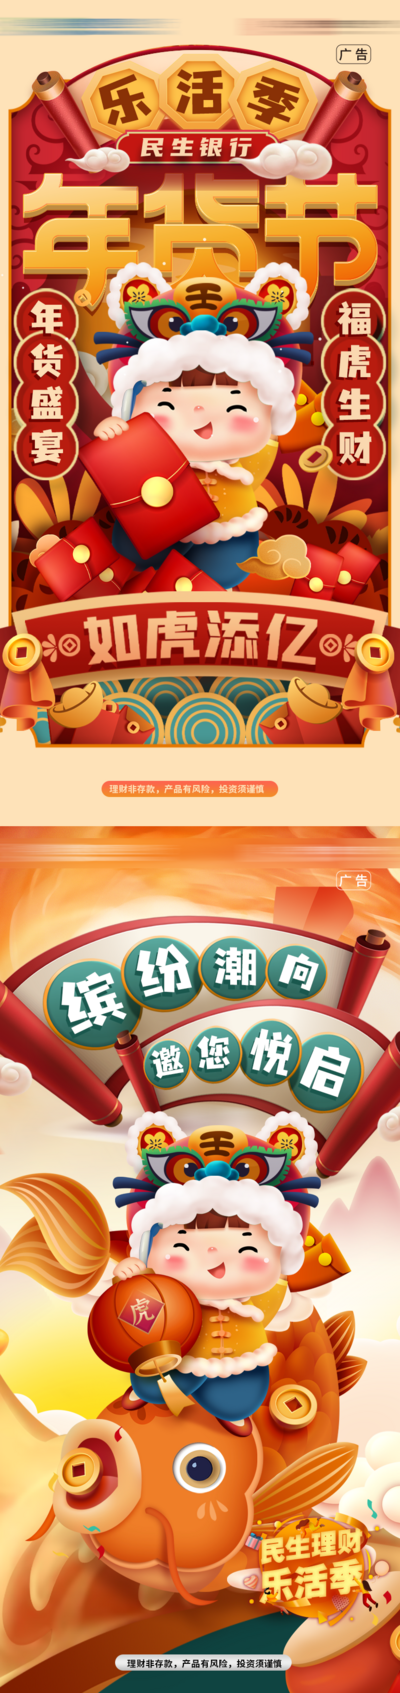 南门网 海报 中国传统节日 春节 年货节 理财 银行 金融 插画 卡通